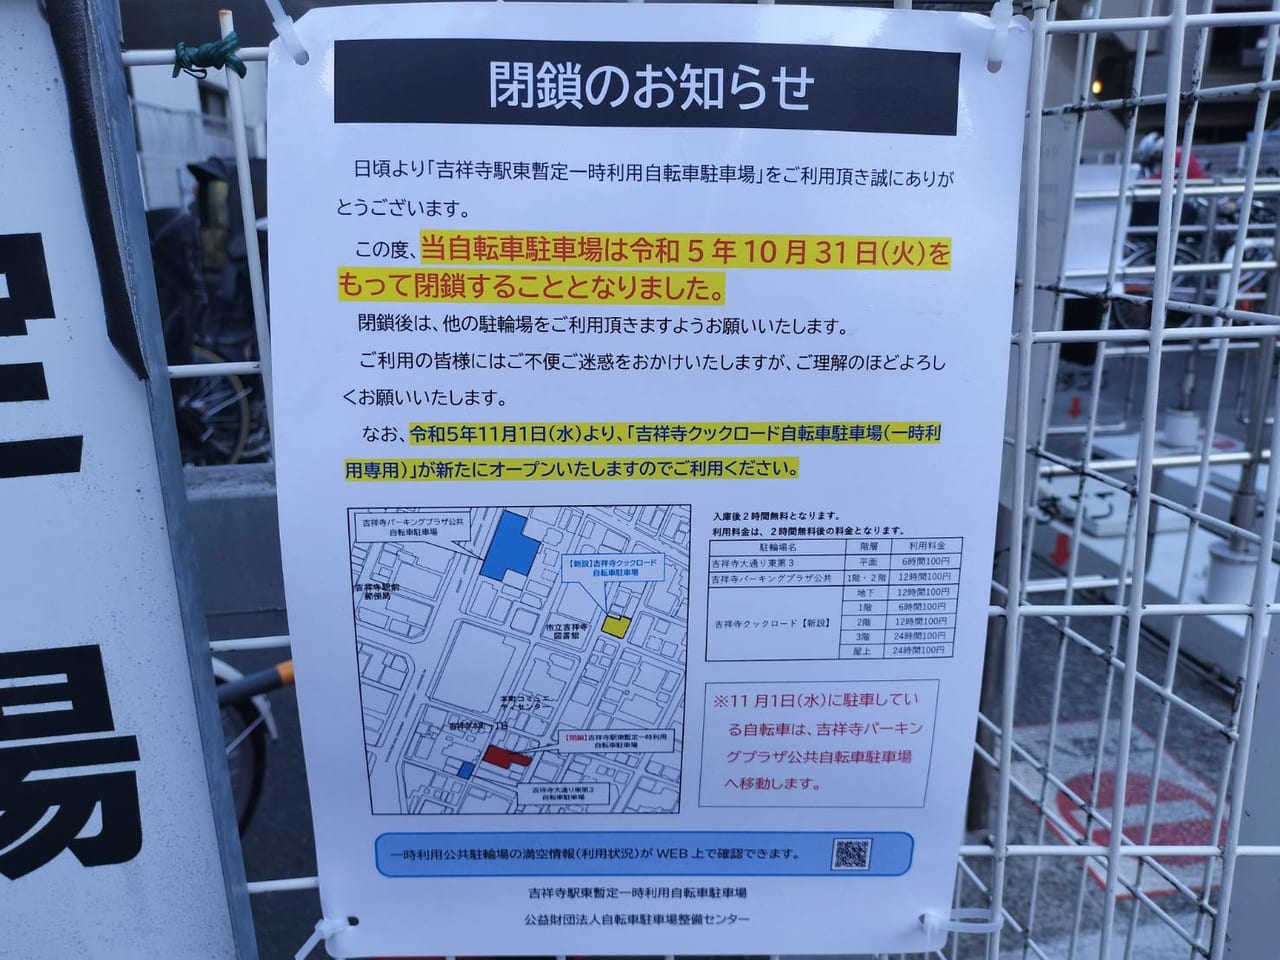 吉祥寺駅東暫定一時利用自転車駐車場閉鎖のお知らせ